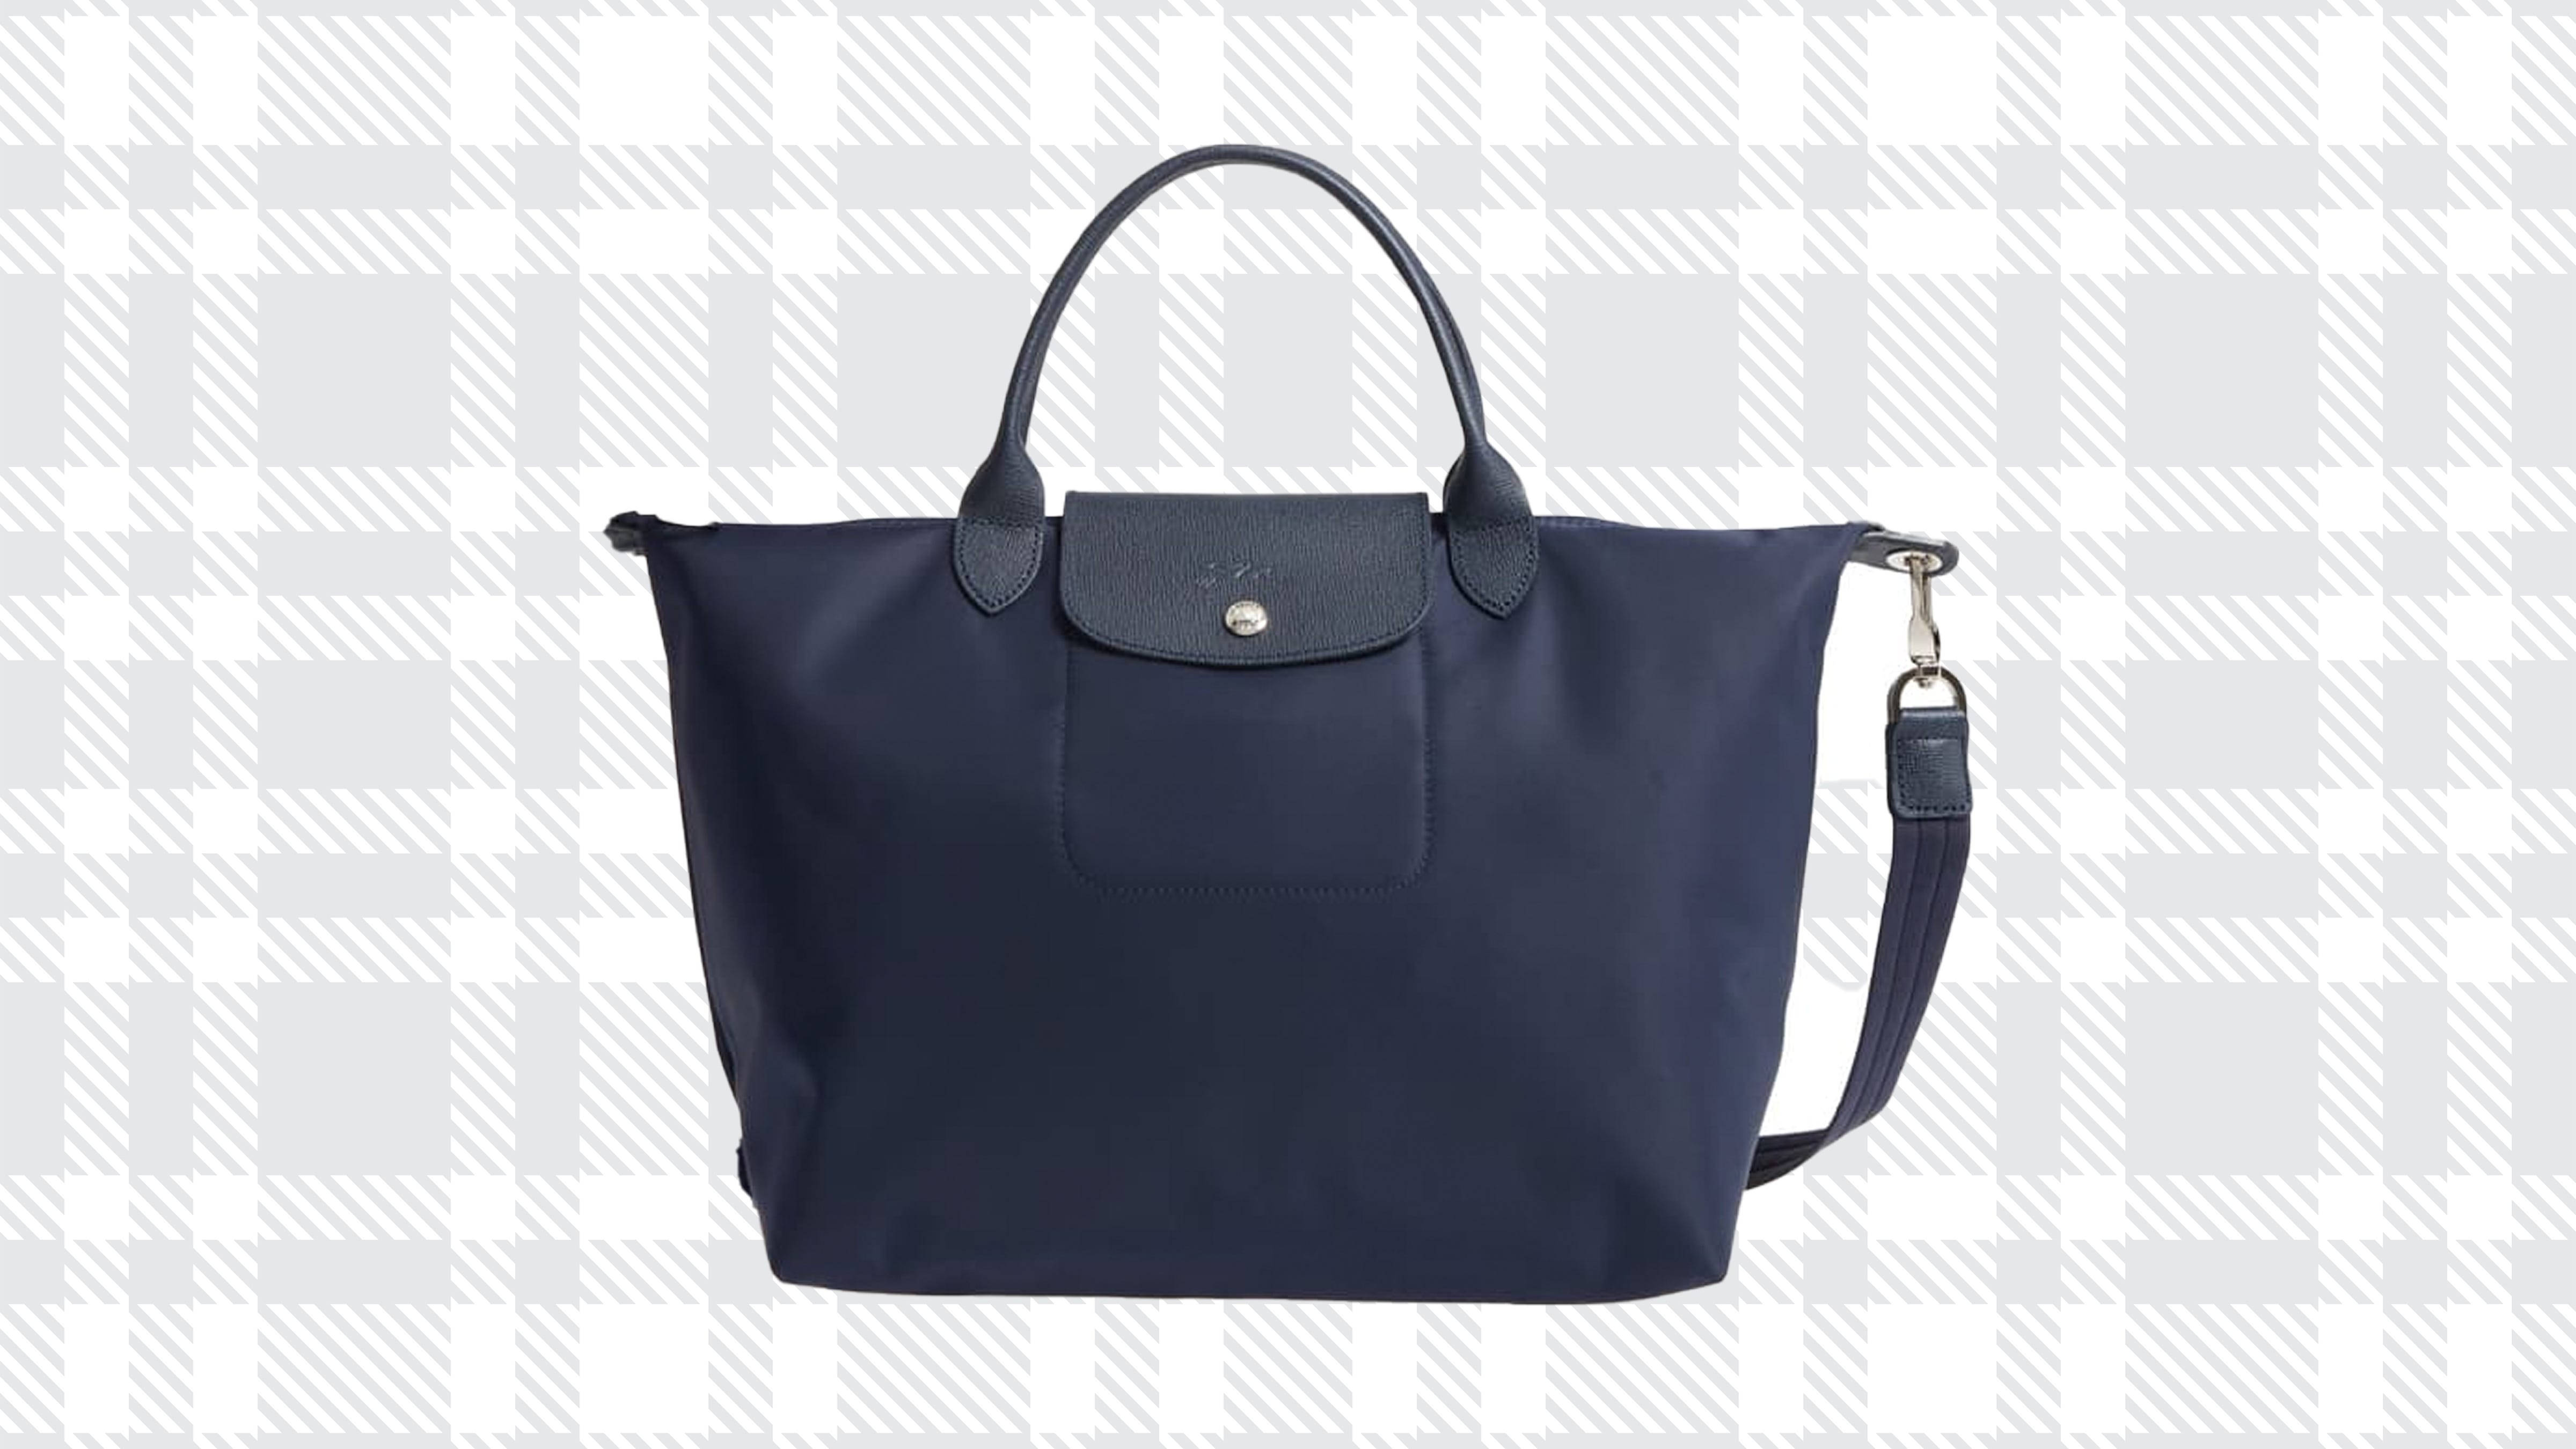 Longchamp bag: Shop tons of discounted 